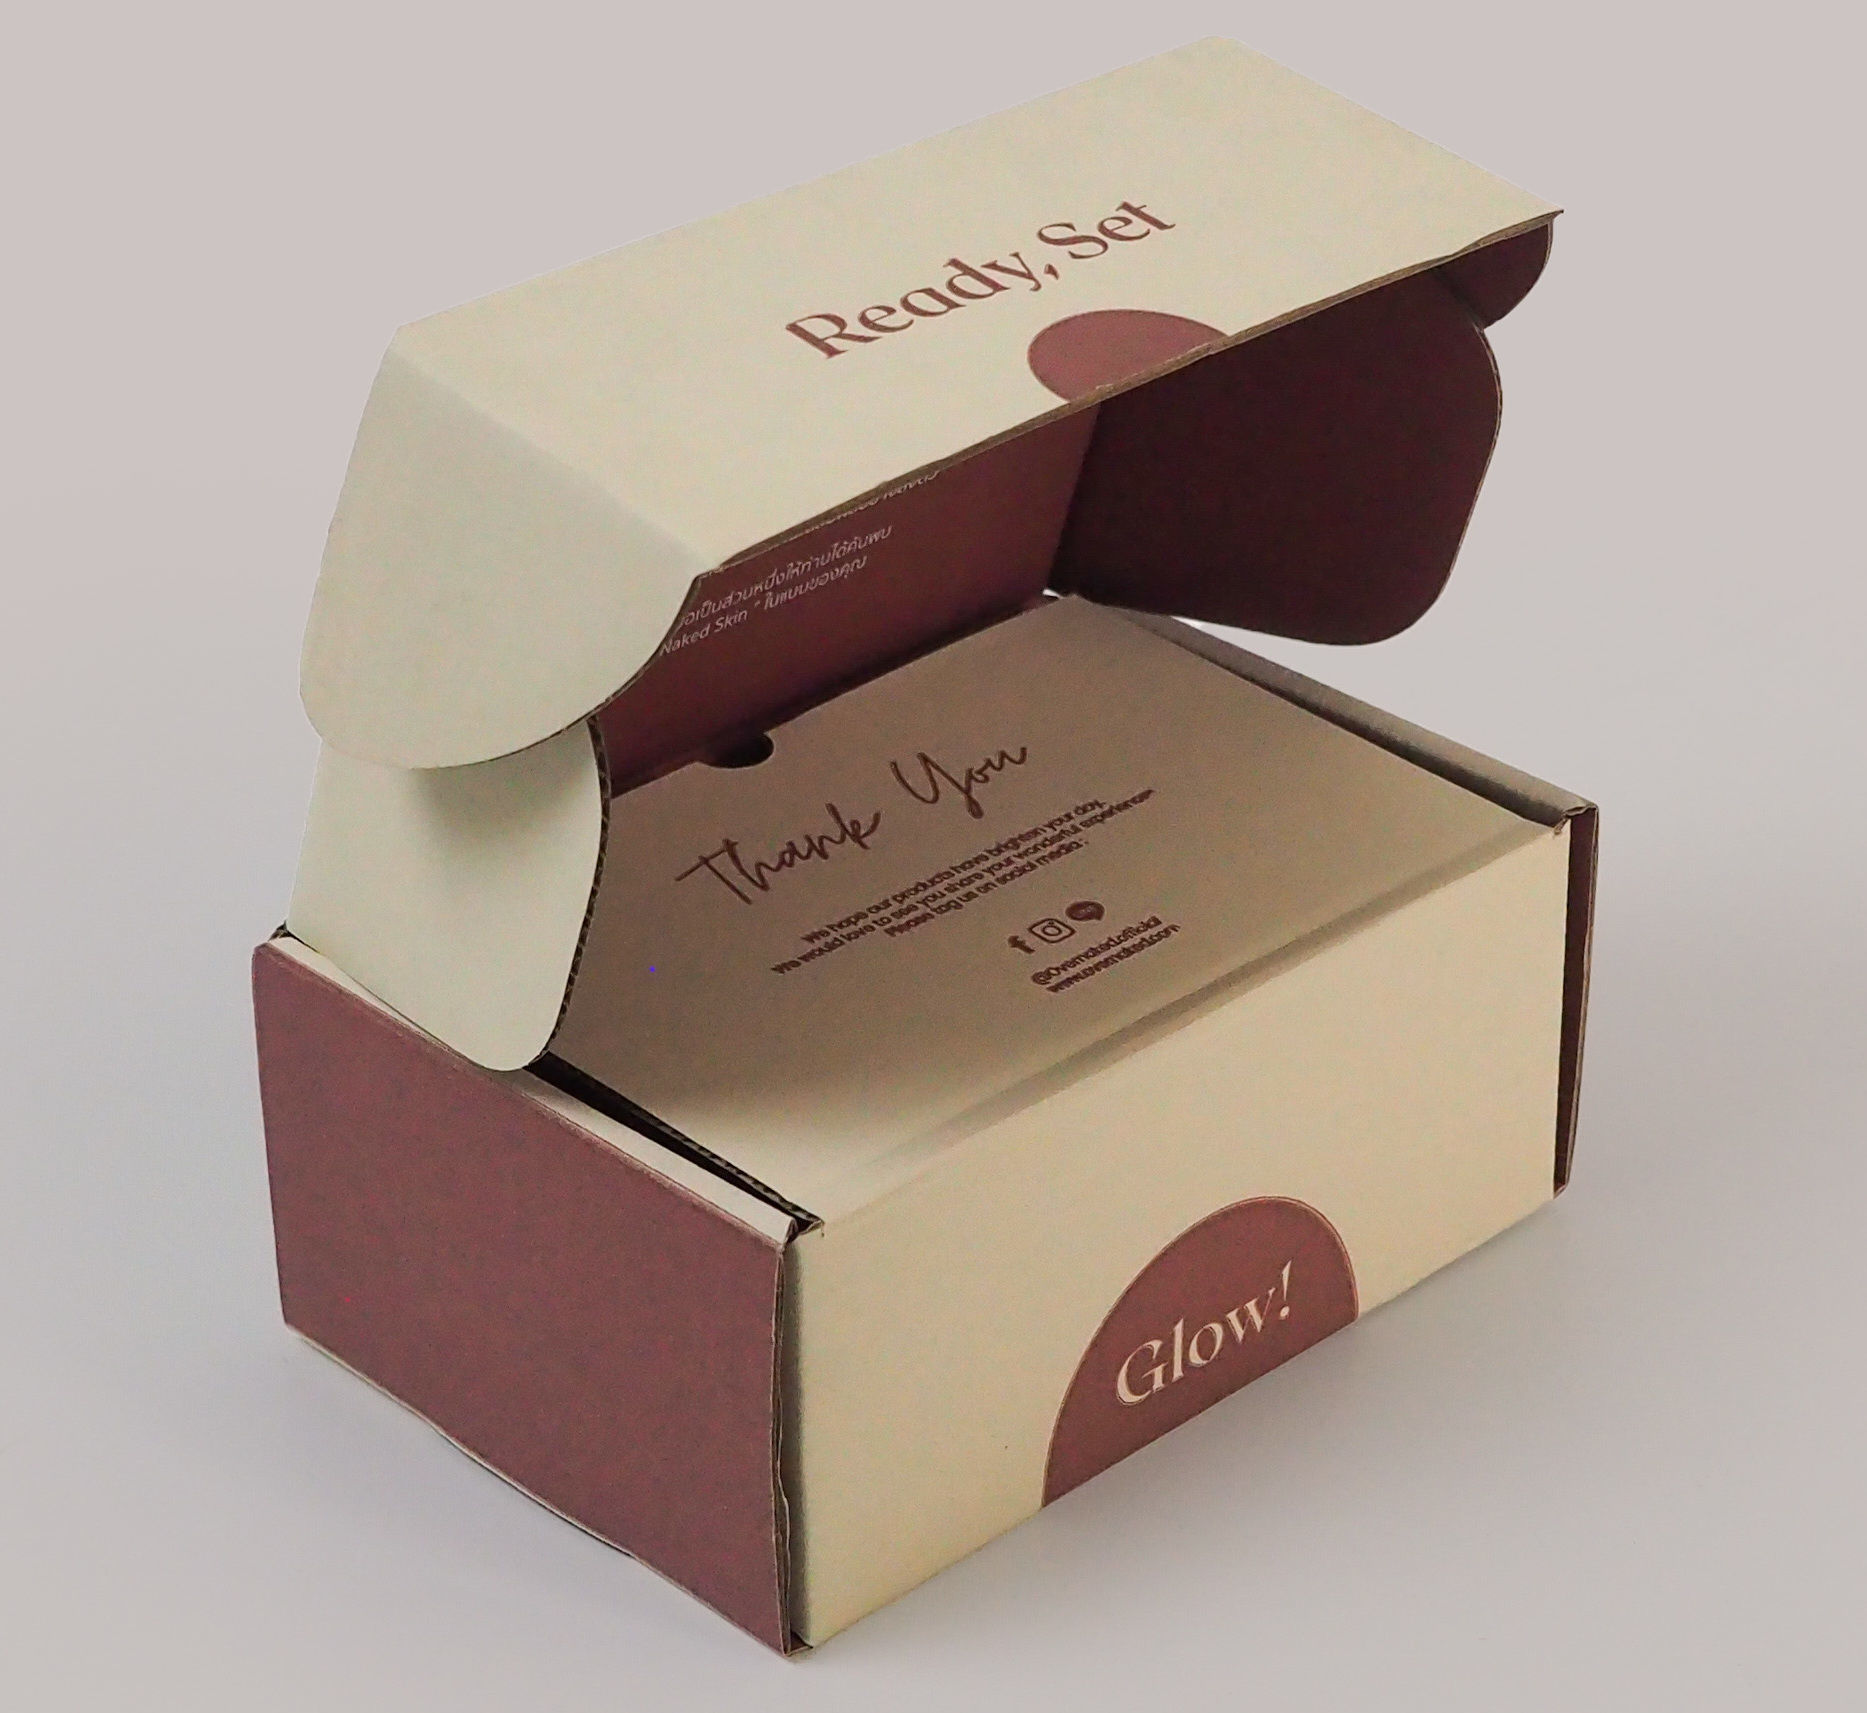 กล่องไปรษณีย์หูช้าง-มีฝาด้าใน Brand OVER NEKED,กล่องไปรษณีย์บอดี้แคร์ ออยล์บำรุงผิวกลิ่นหอม